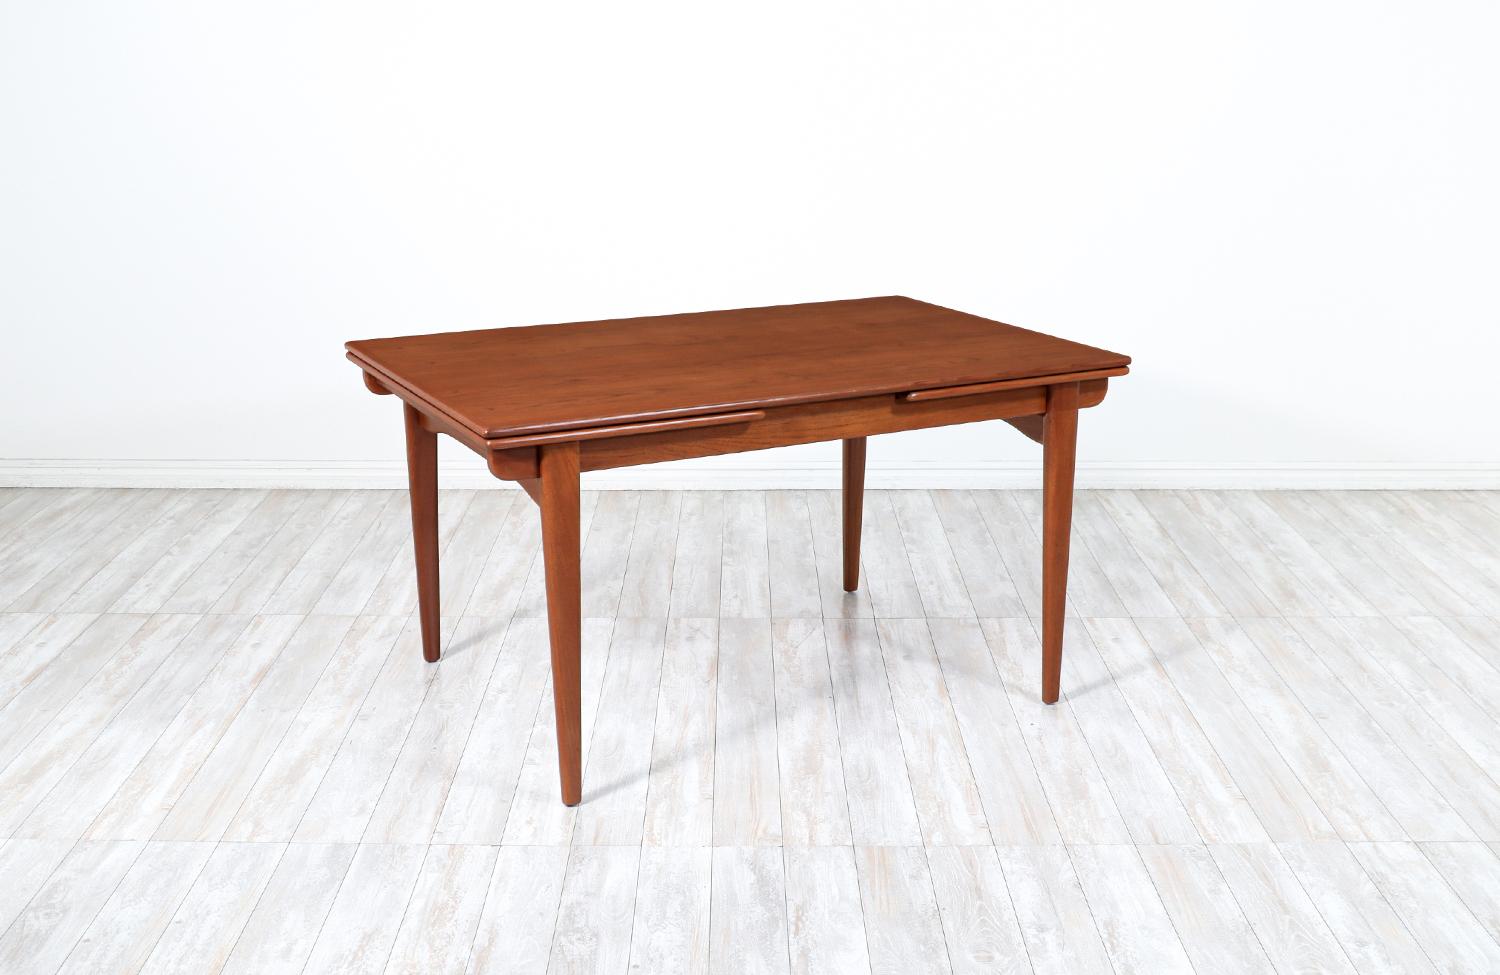 Élégante table de salle à manger moderne danoise, conçue par le designer de meubles danois Johannes Andersen et fabriquée par l'atelier Uldum Møbelfabrik, vers les années 1960. Cette table polyvalente se compose d'un corps en bois de teck massif,